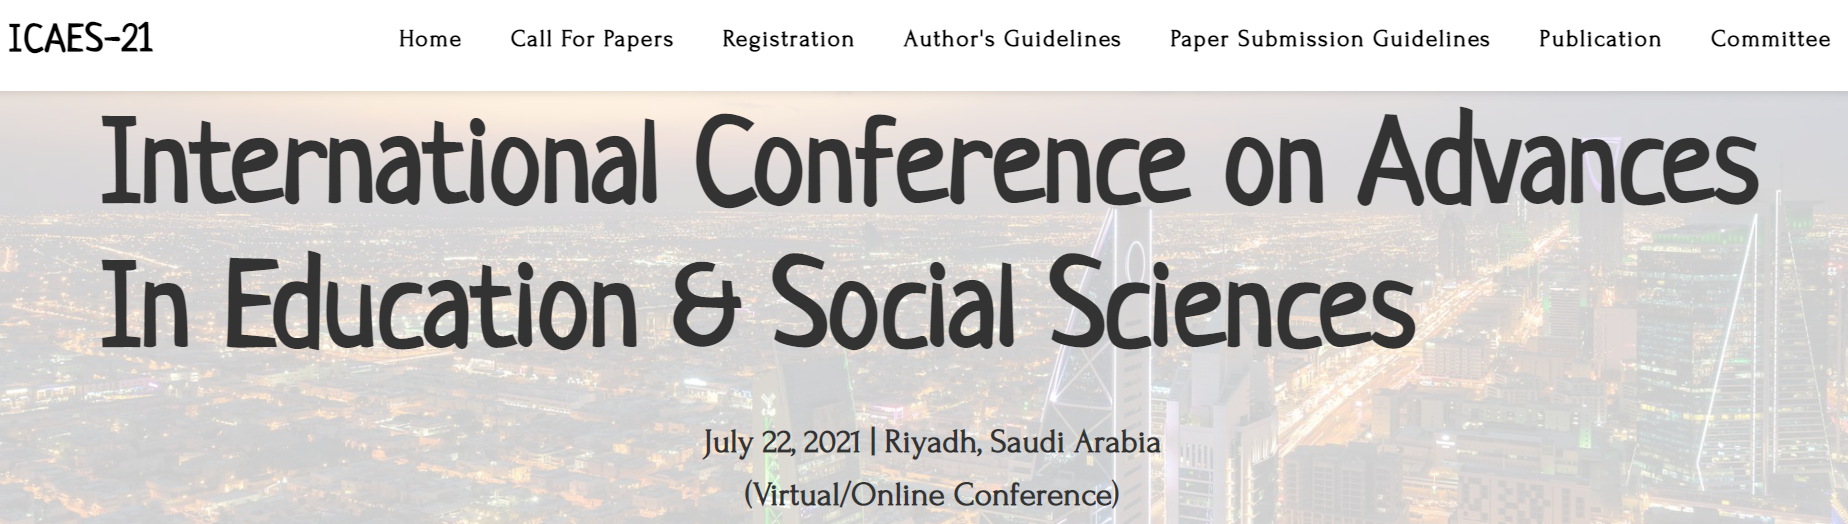 International Conference on Advances In Education & Social Sciences, Riyadh, Saudi Arabia,Riyadh,Saudi Arabia